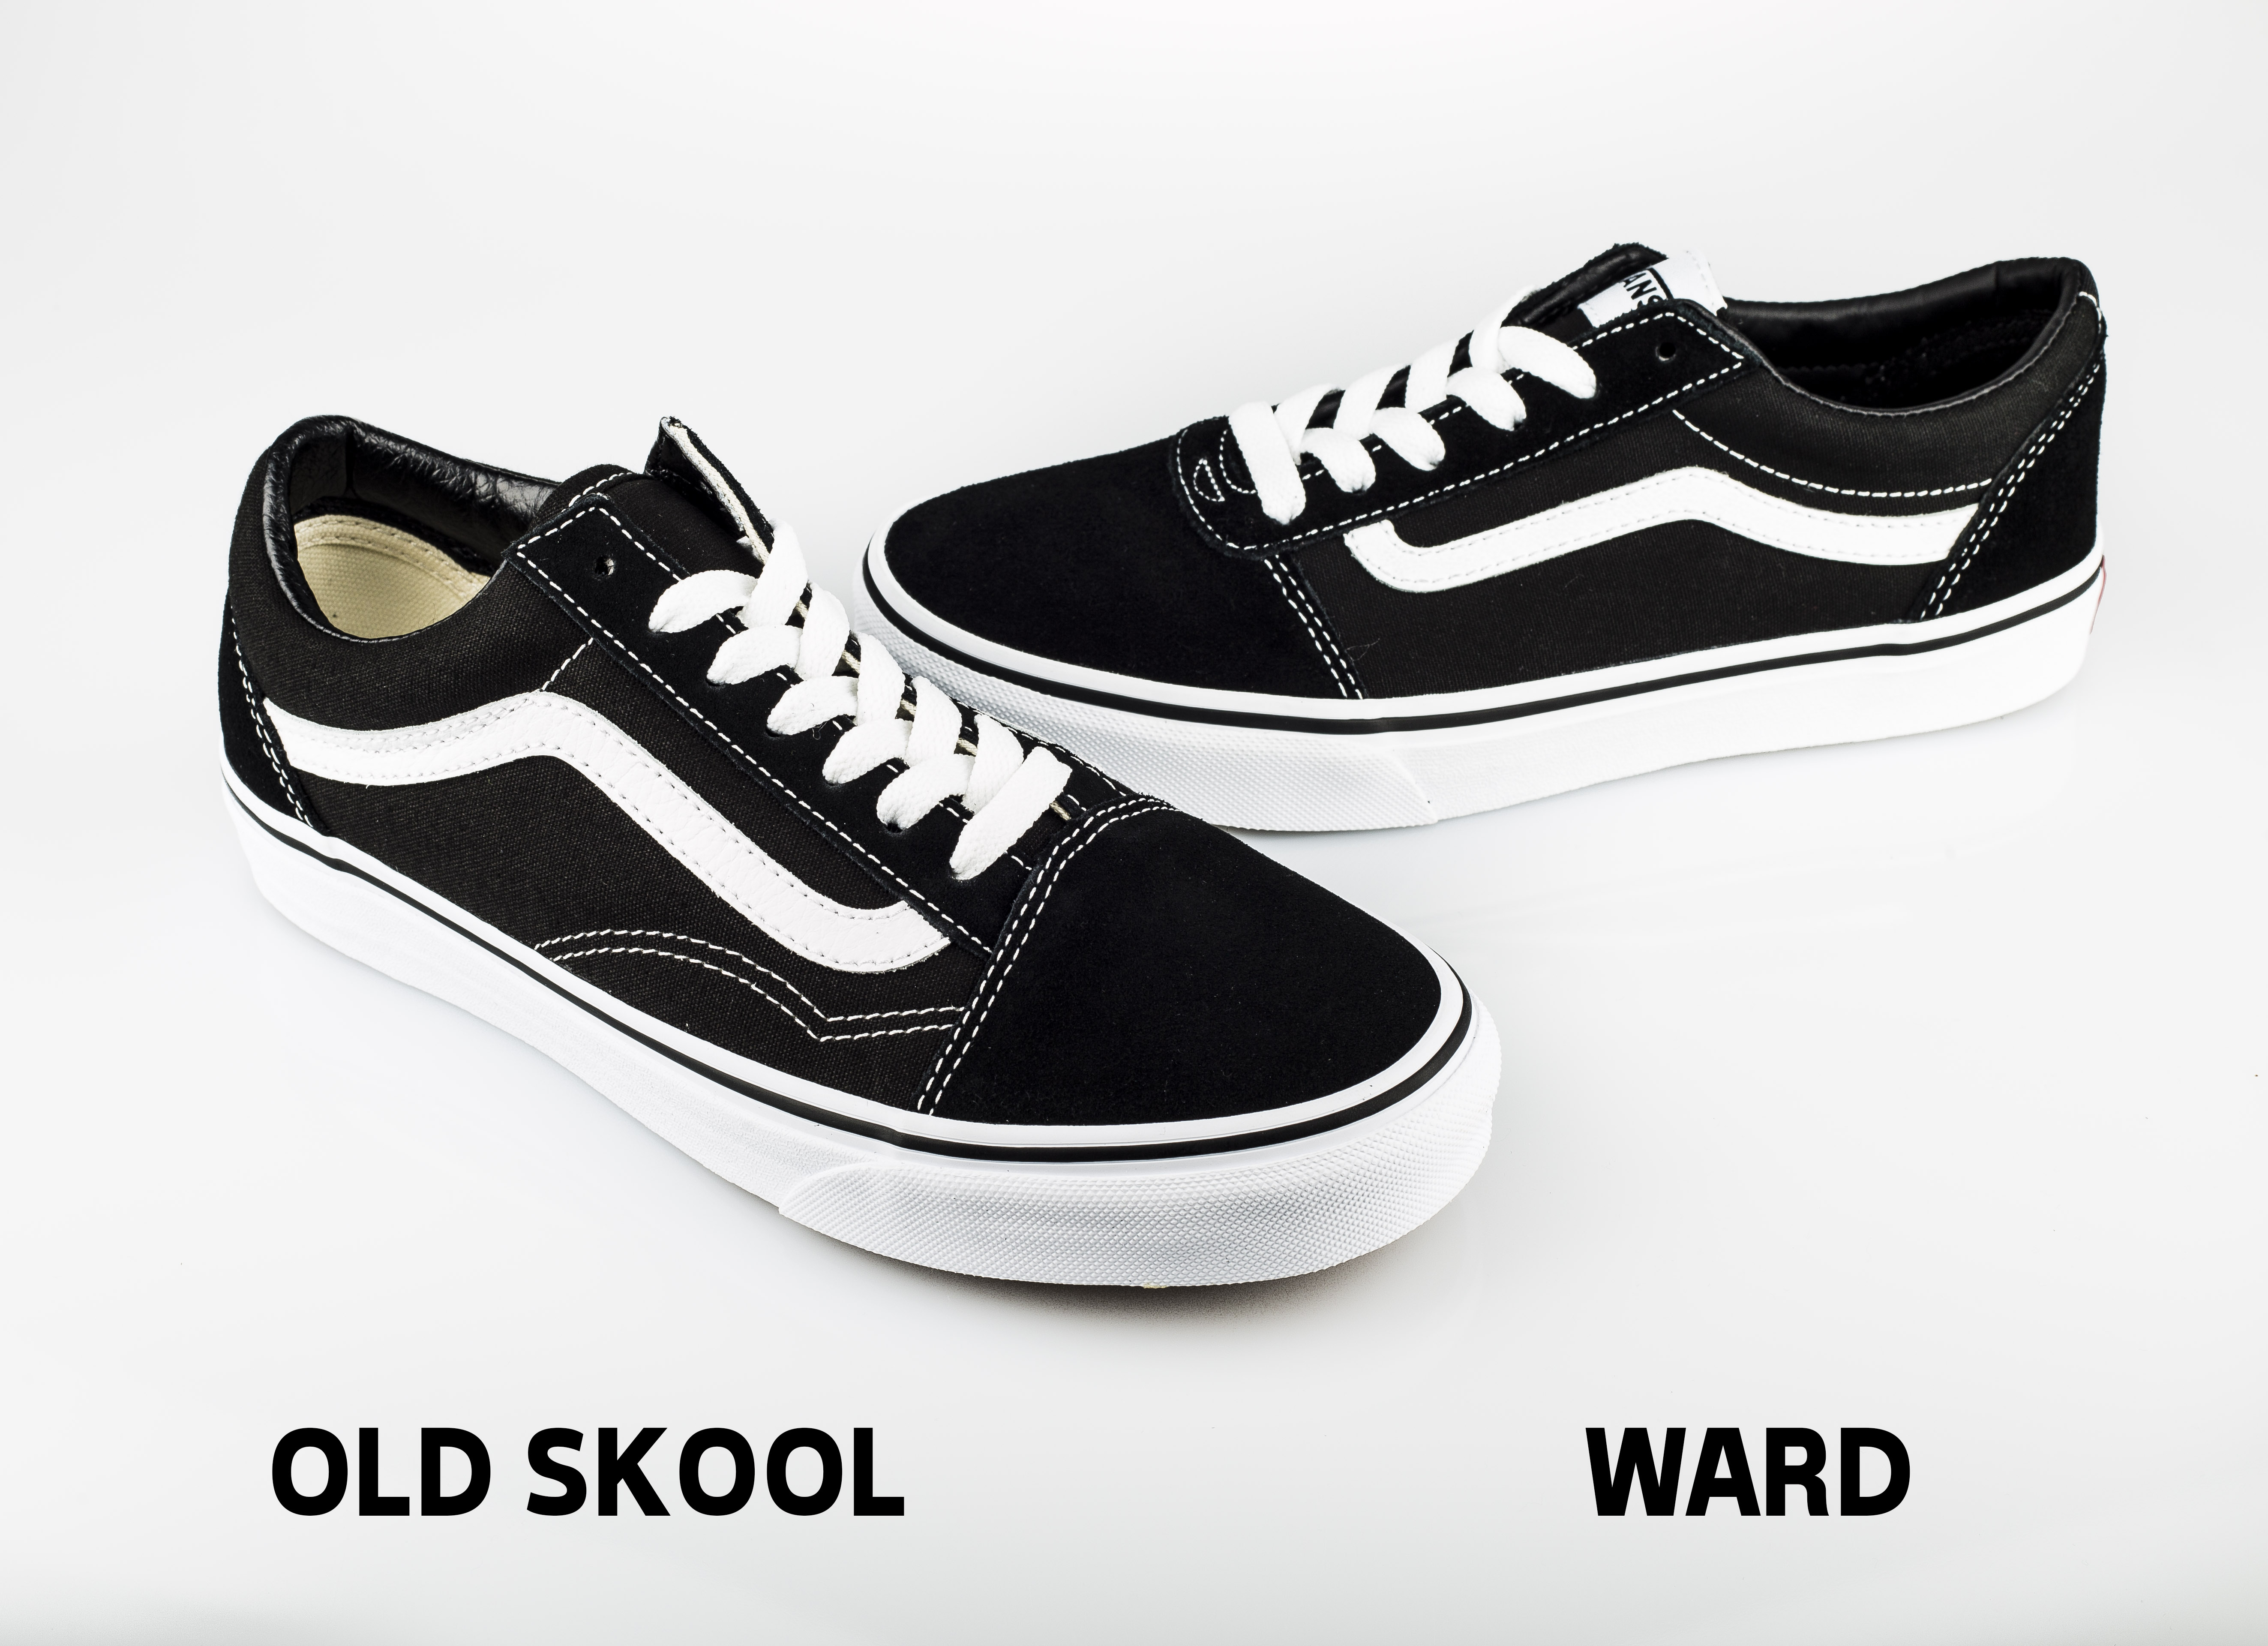 vans ward or old skool